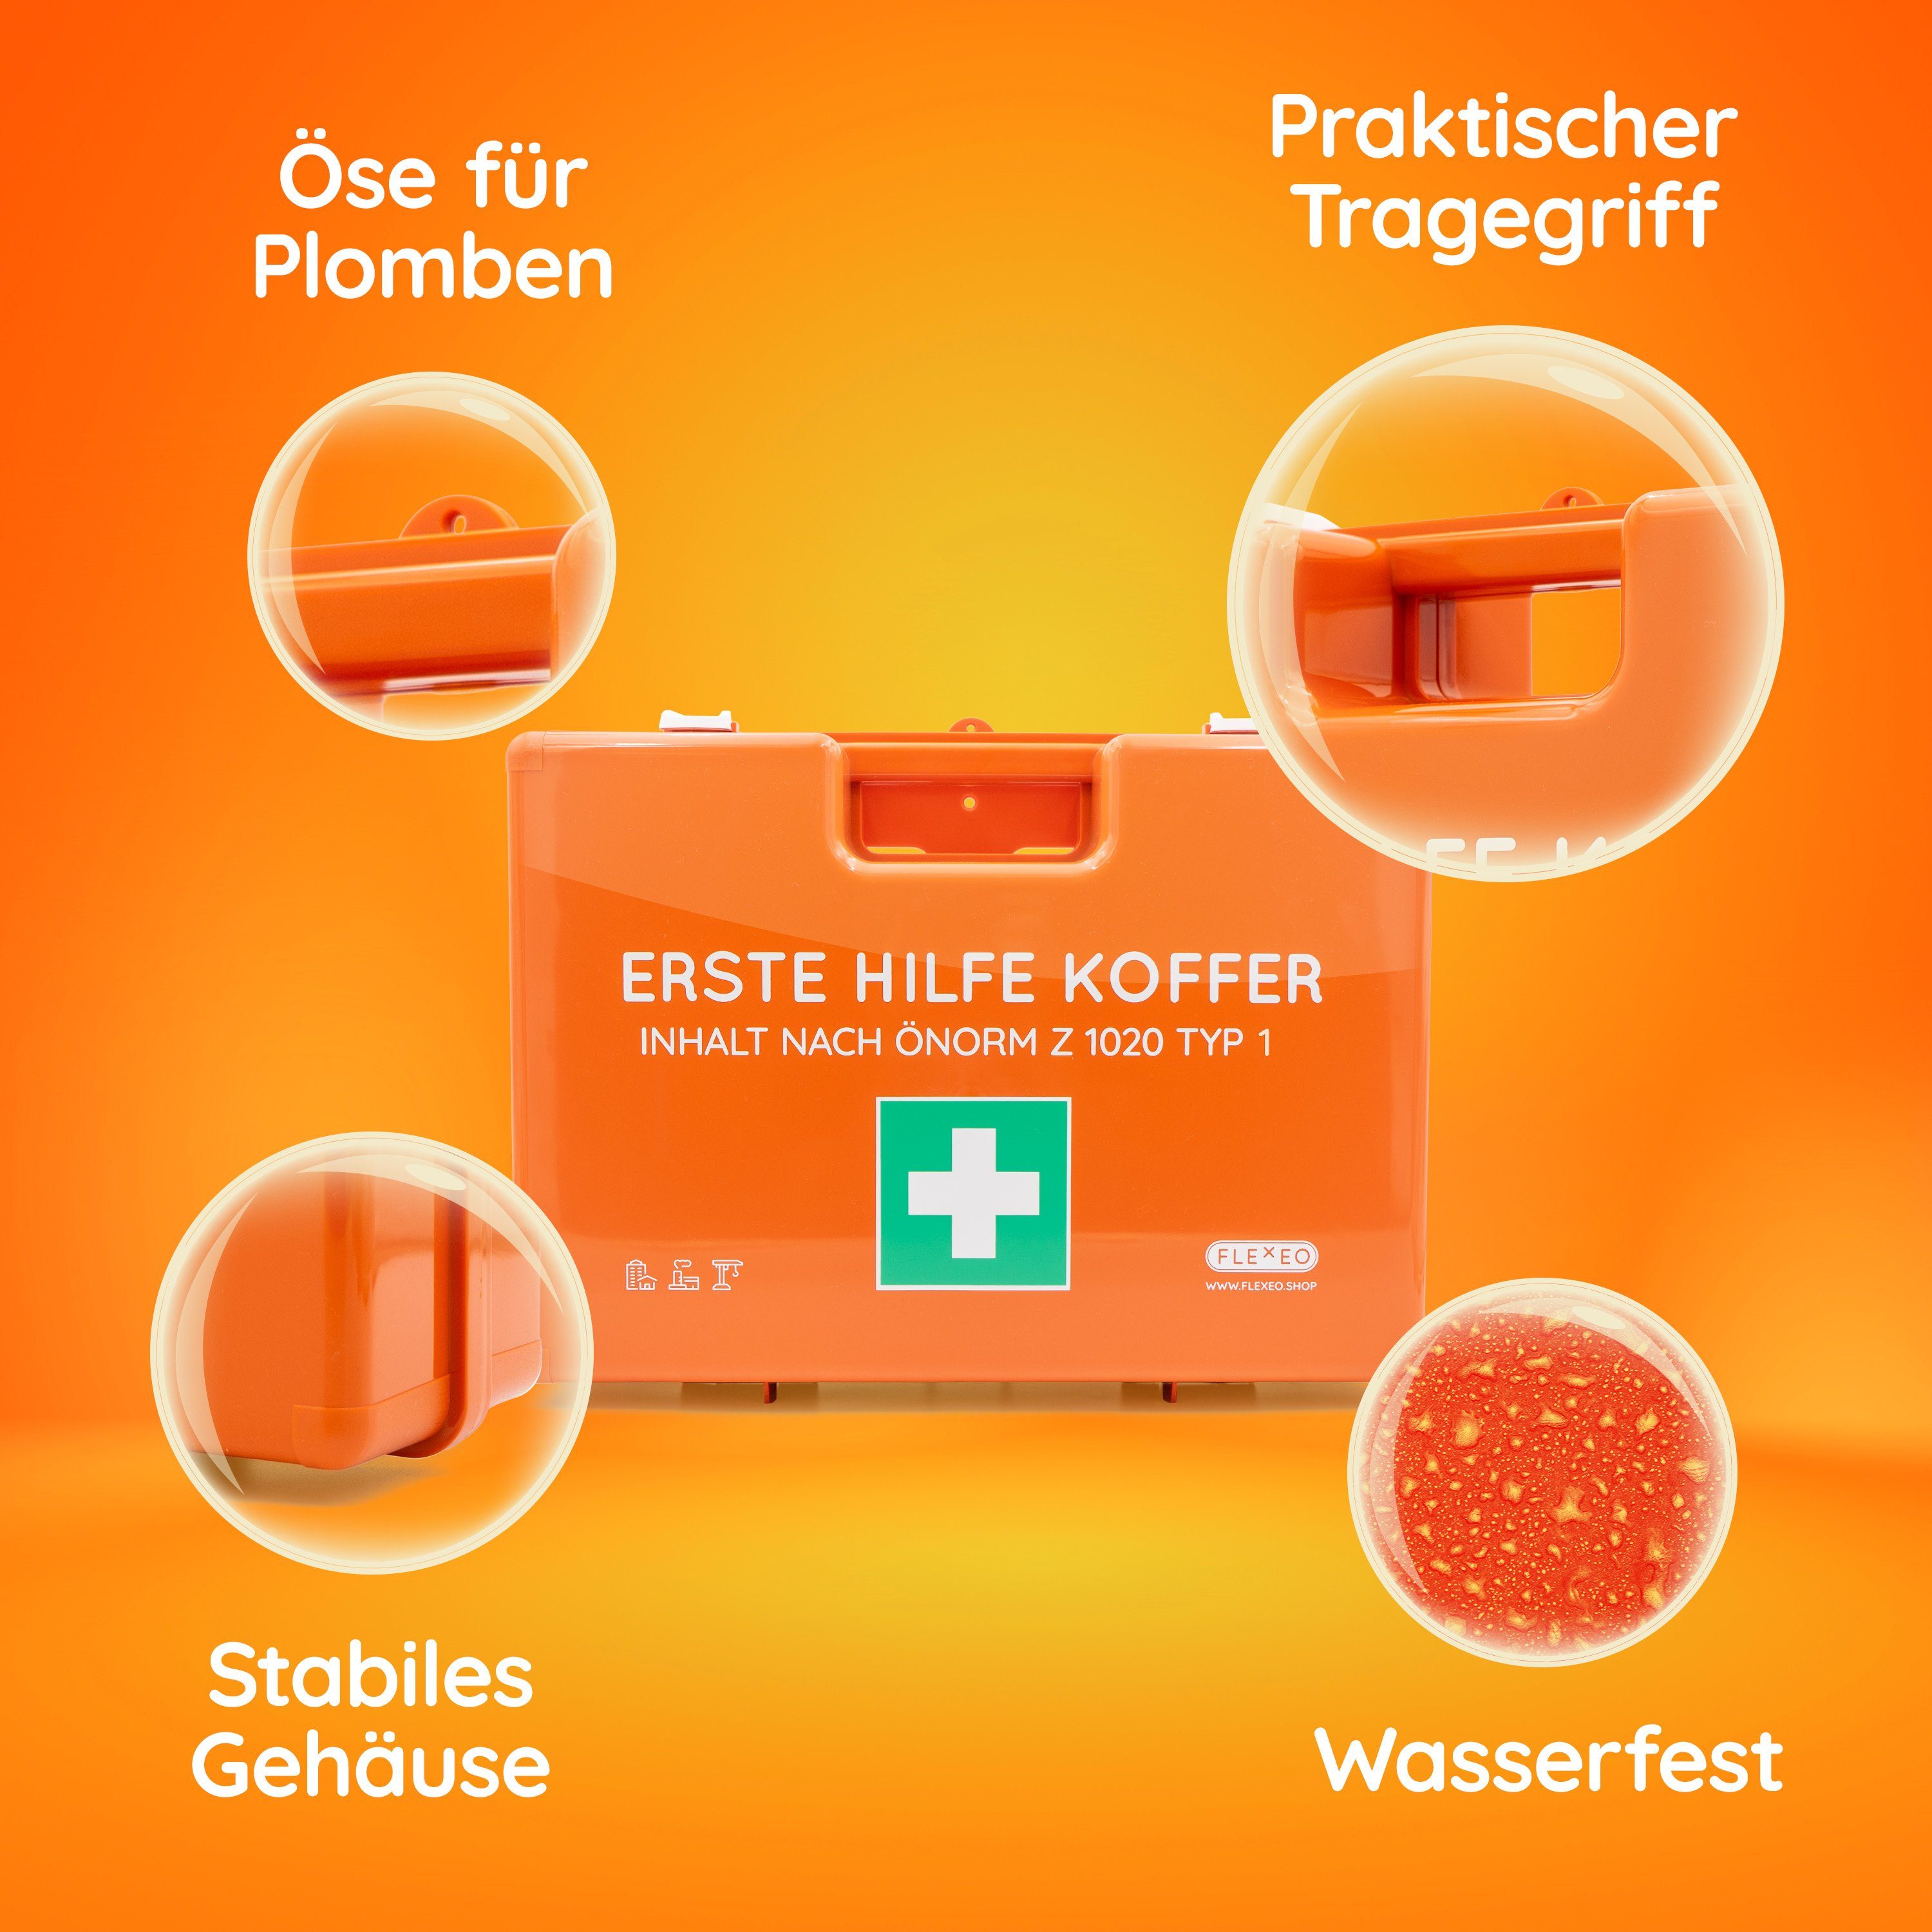 FLEXEO Erste-Hilfe-Set & Wundspray 75ml, (1 St), Verbandtasche mit  Tragegriff, orange